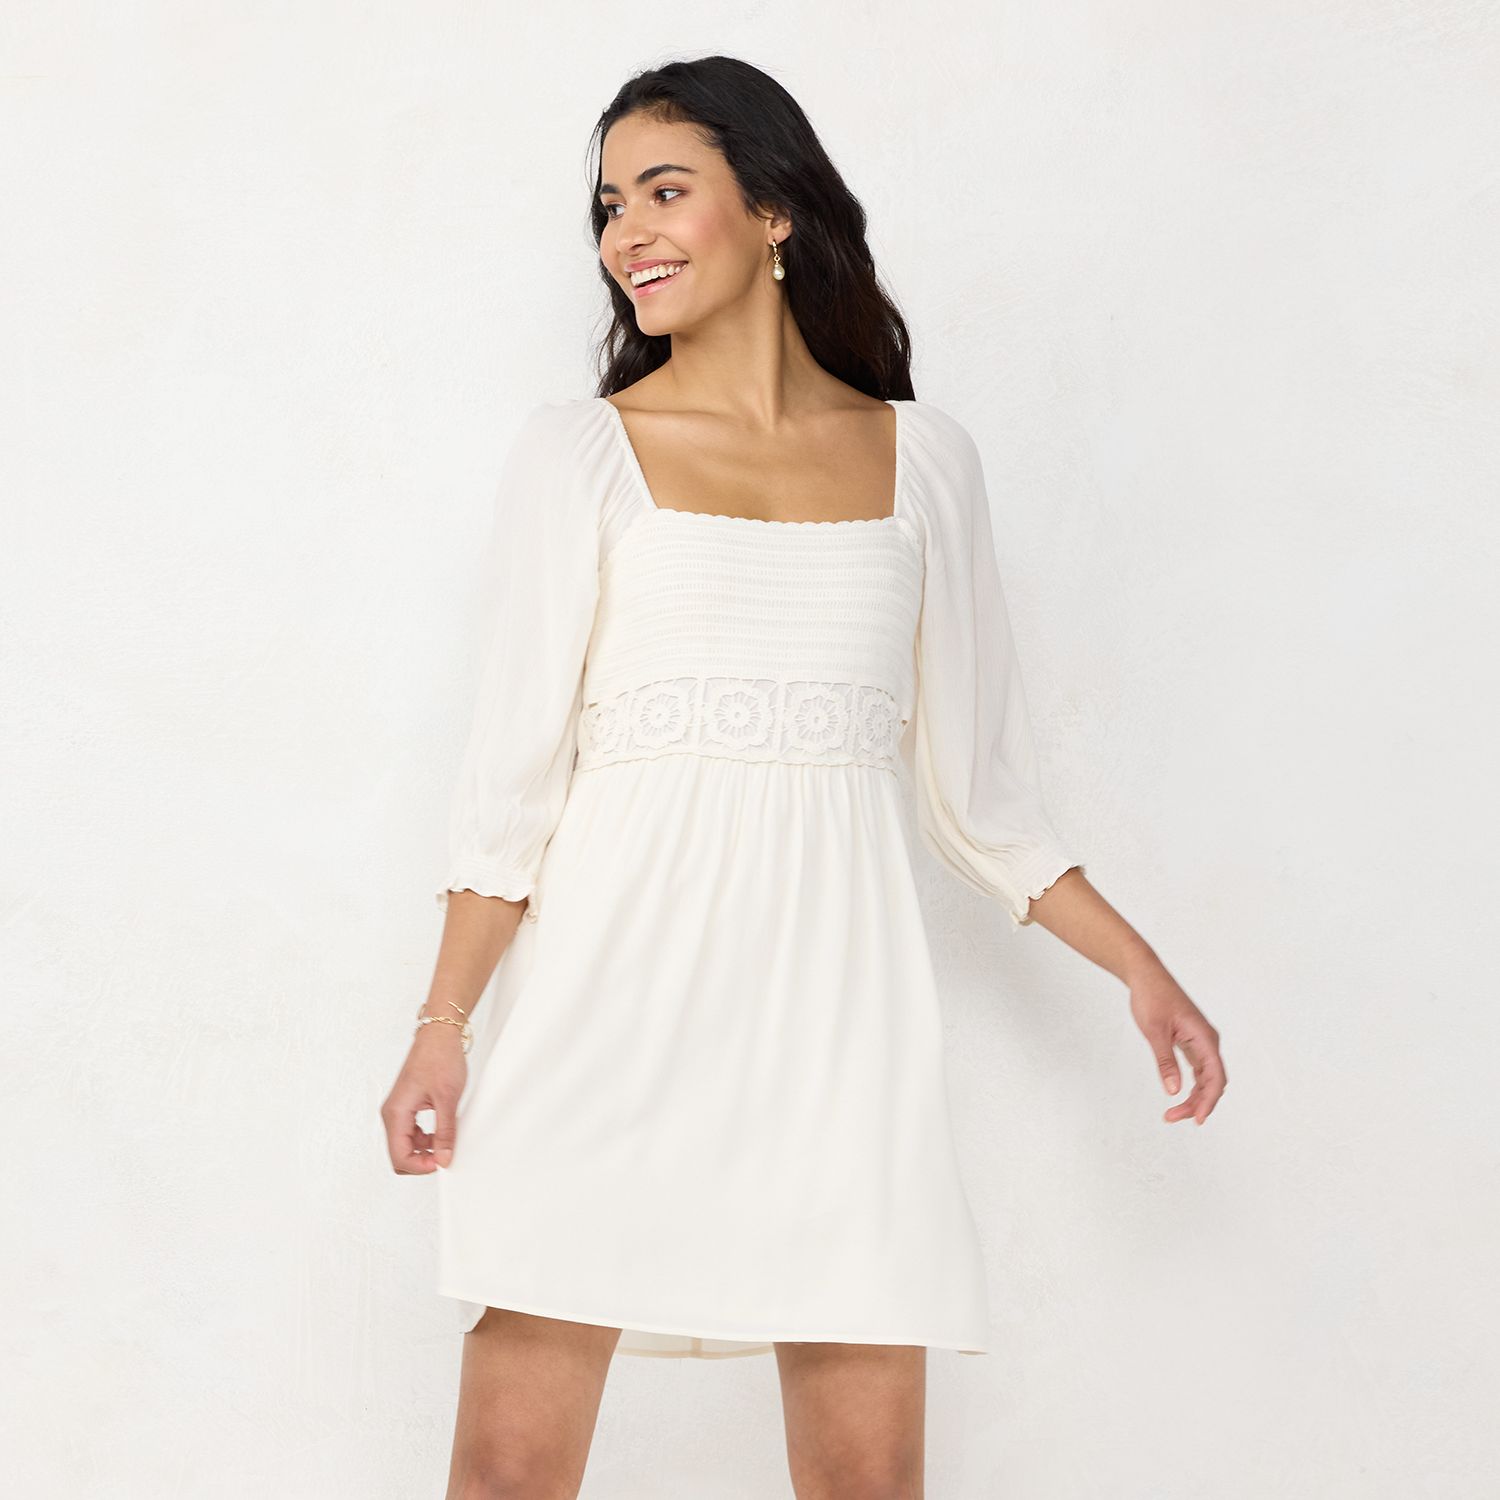 Short White Dresses for Women | Kohl's